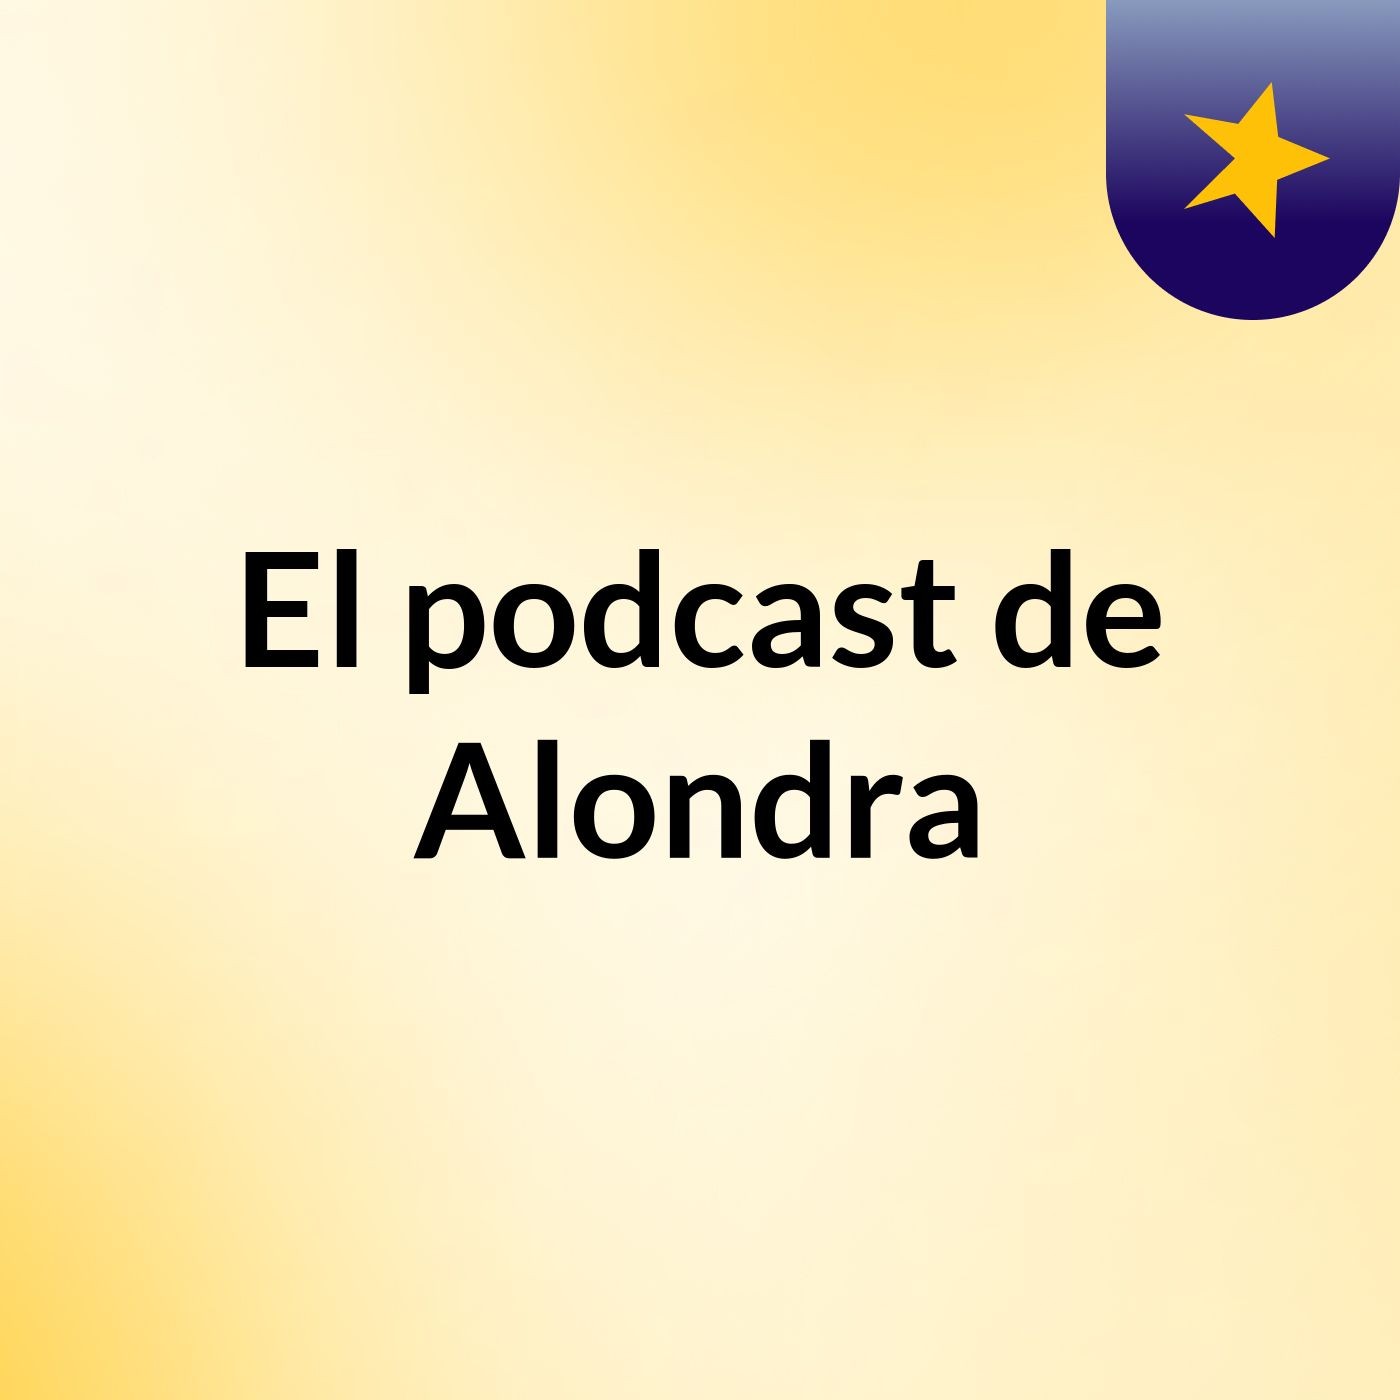 El podcast de Alondra